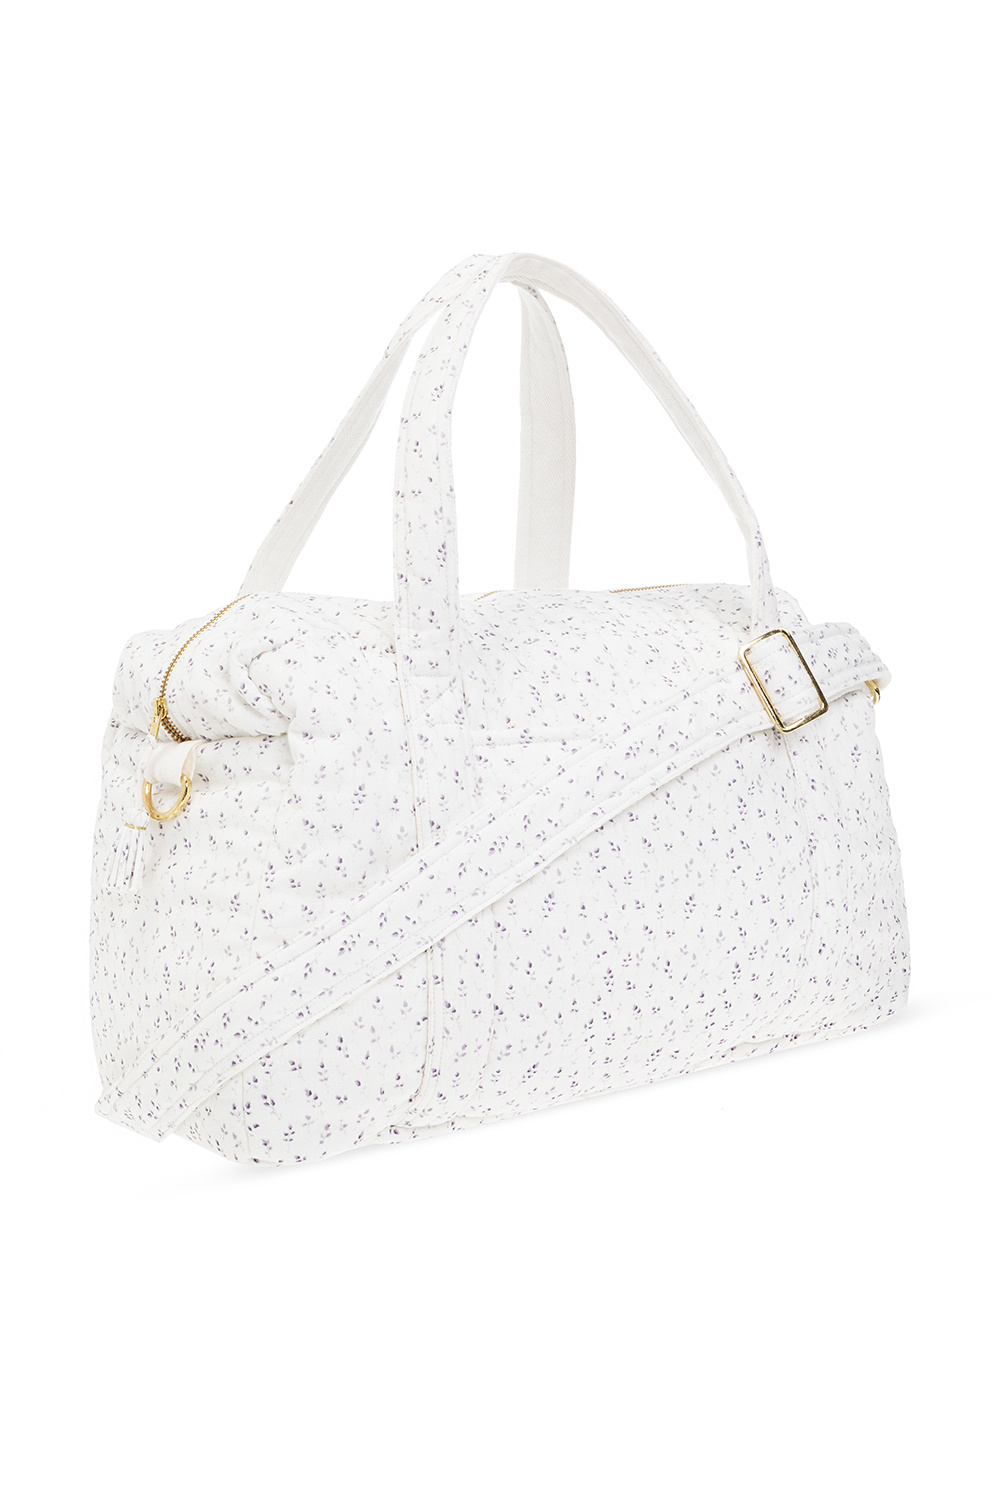 Bonpoint  Shoulder bag with floral motif